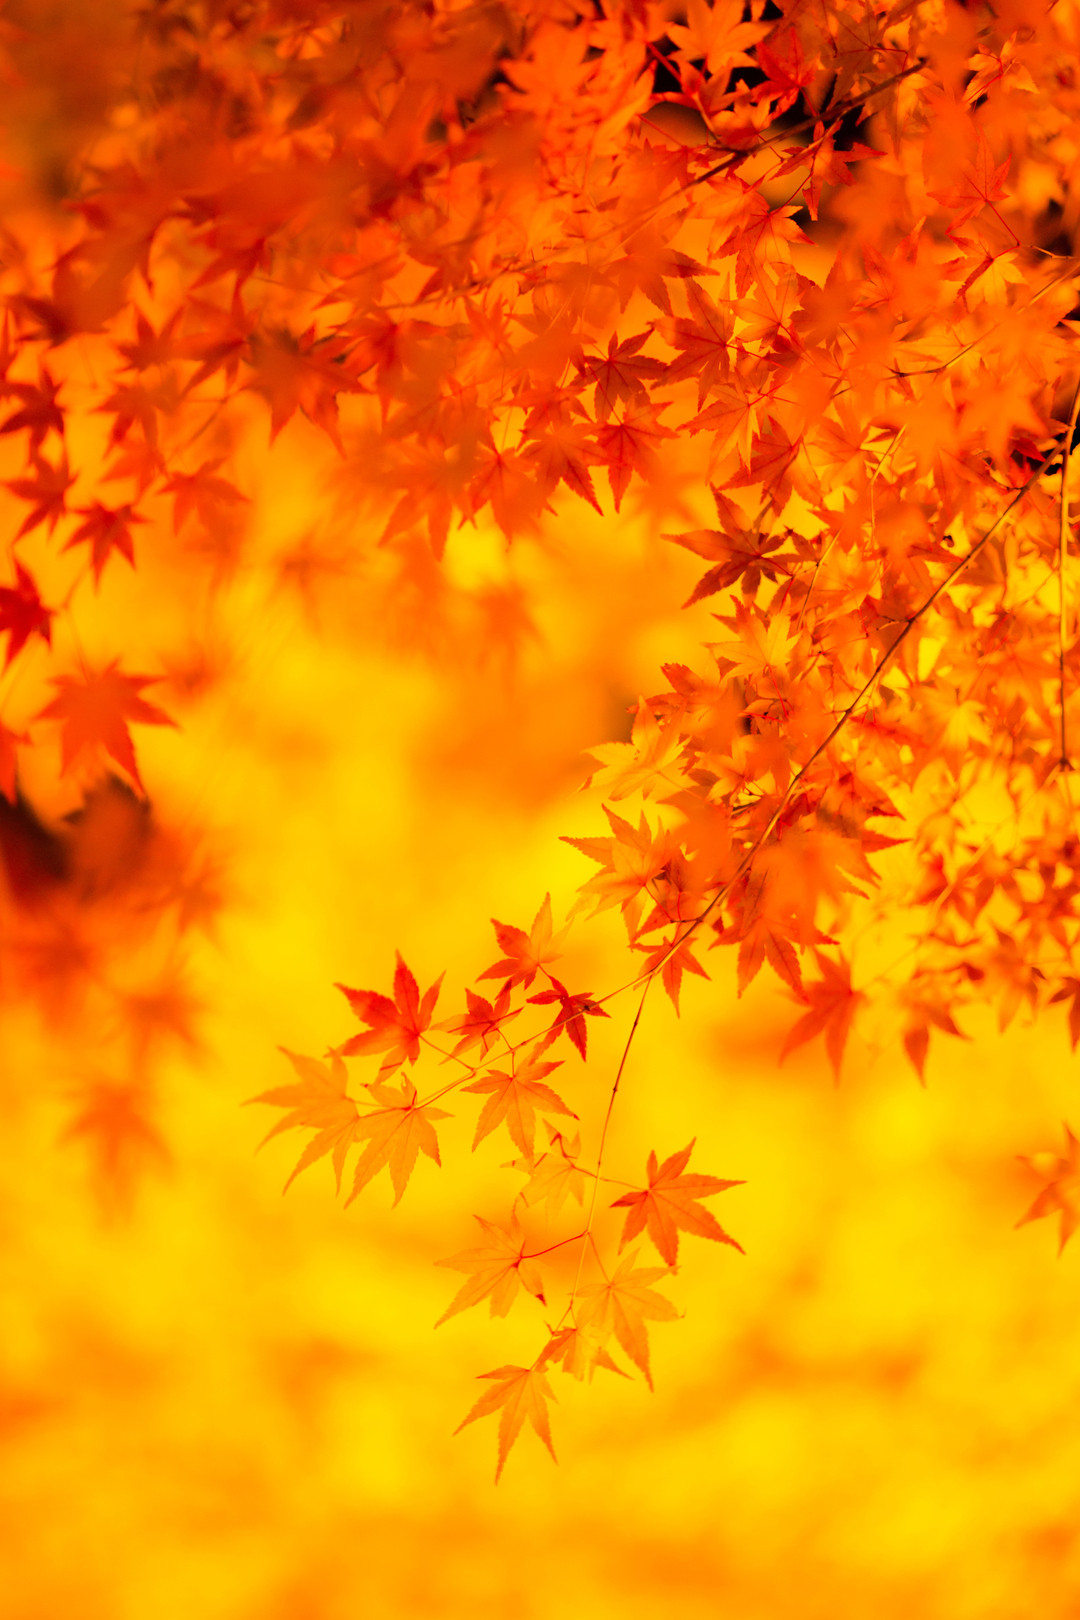 秋季枫叶中间有洞 美丽的秋波 库存图片. 图片 包括有 心情, 槭树, 叶子, 中间, 自治权, 漏洞 - 184695381